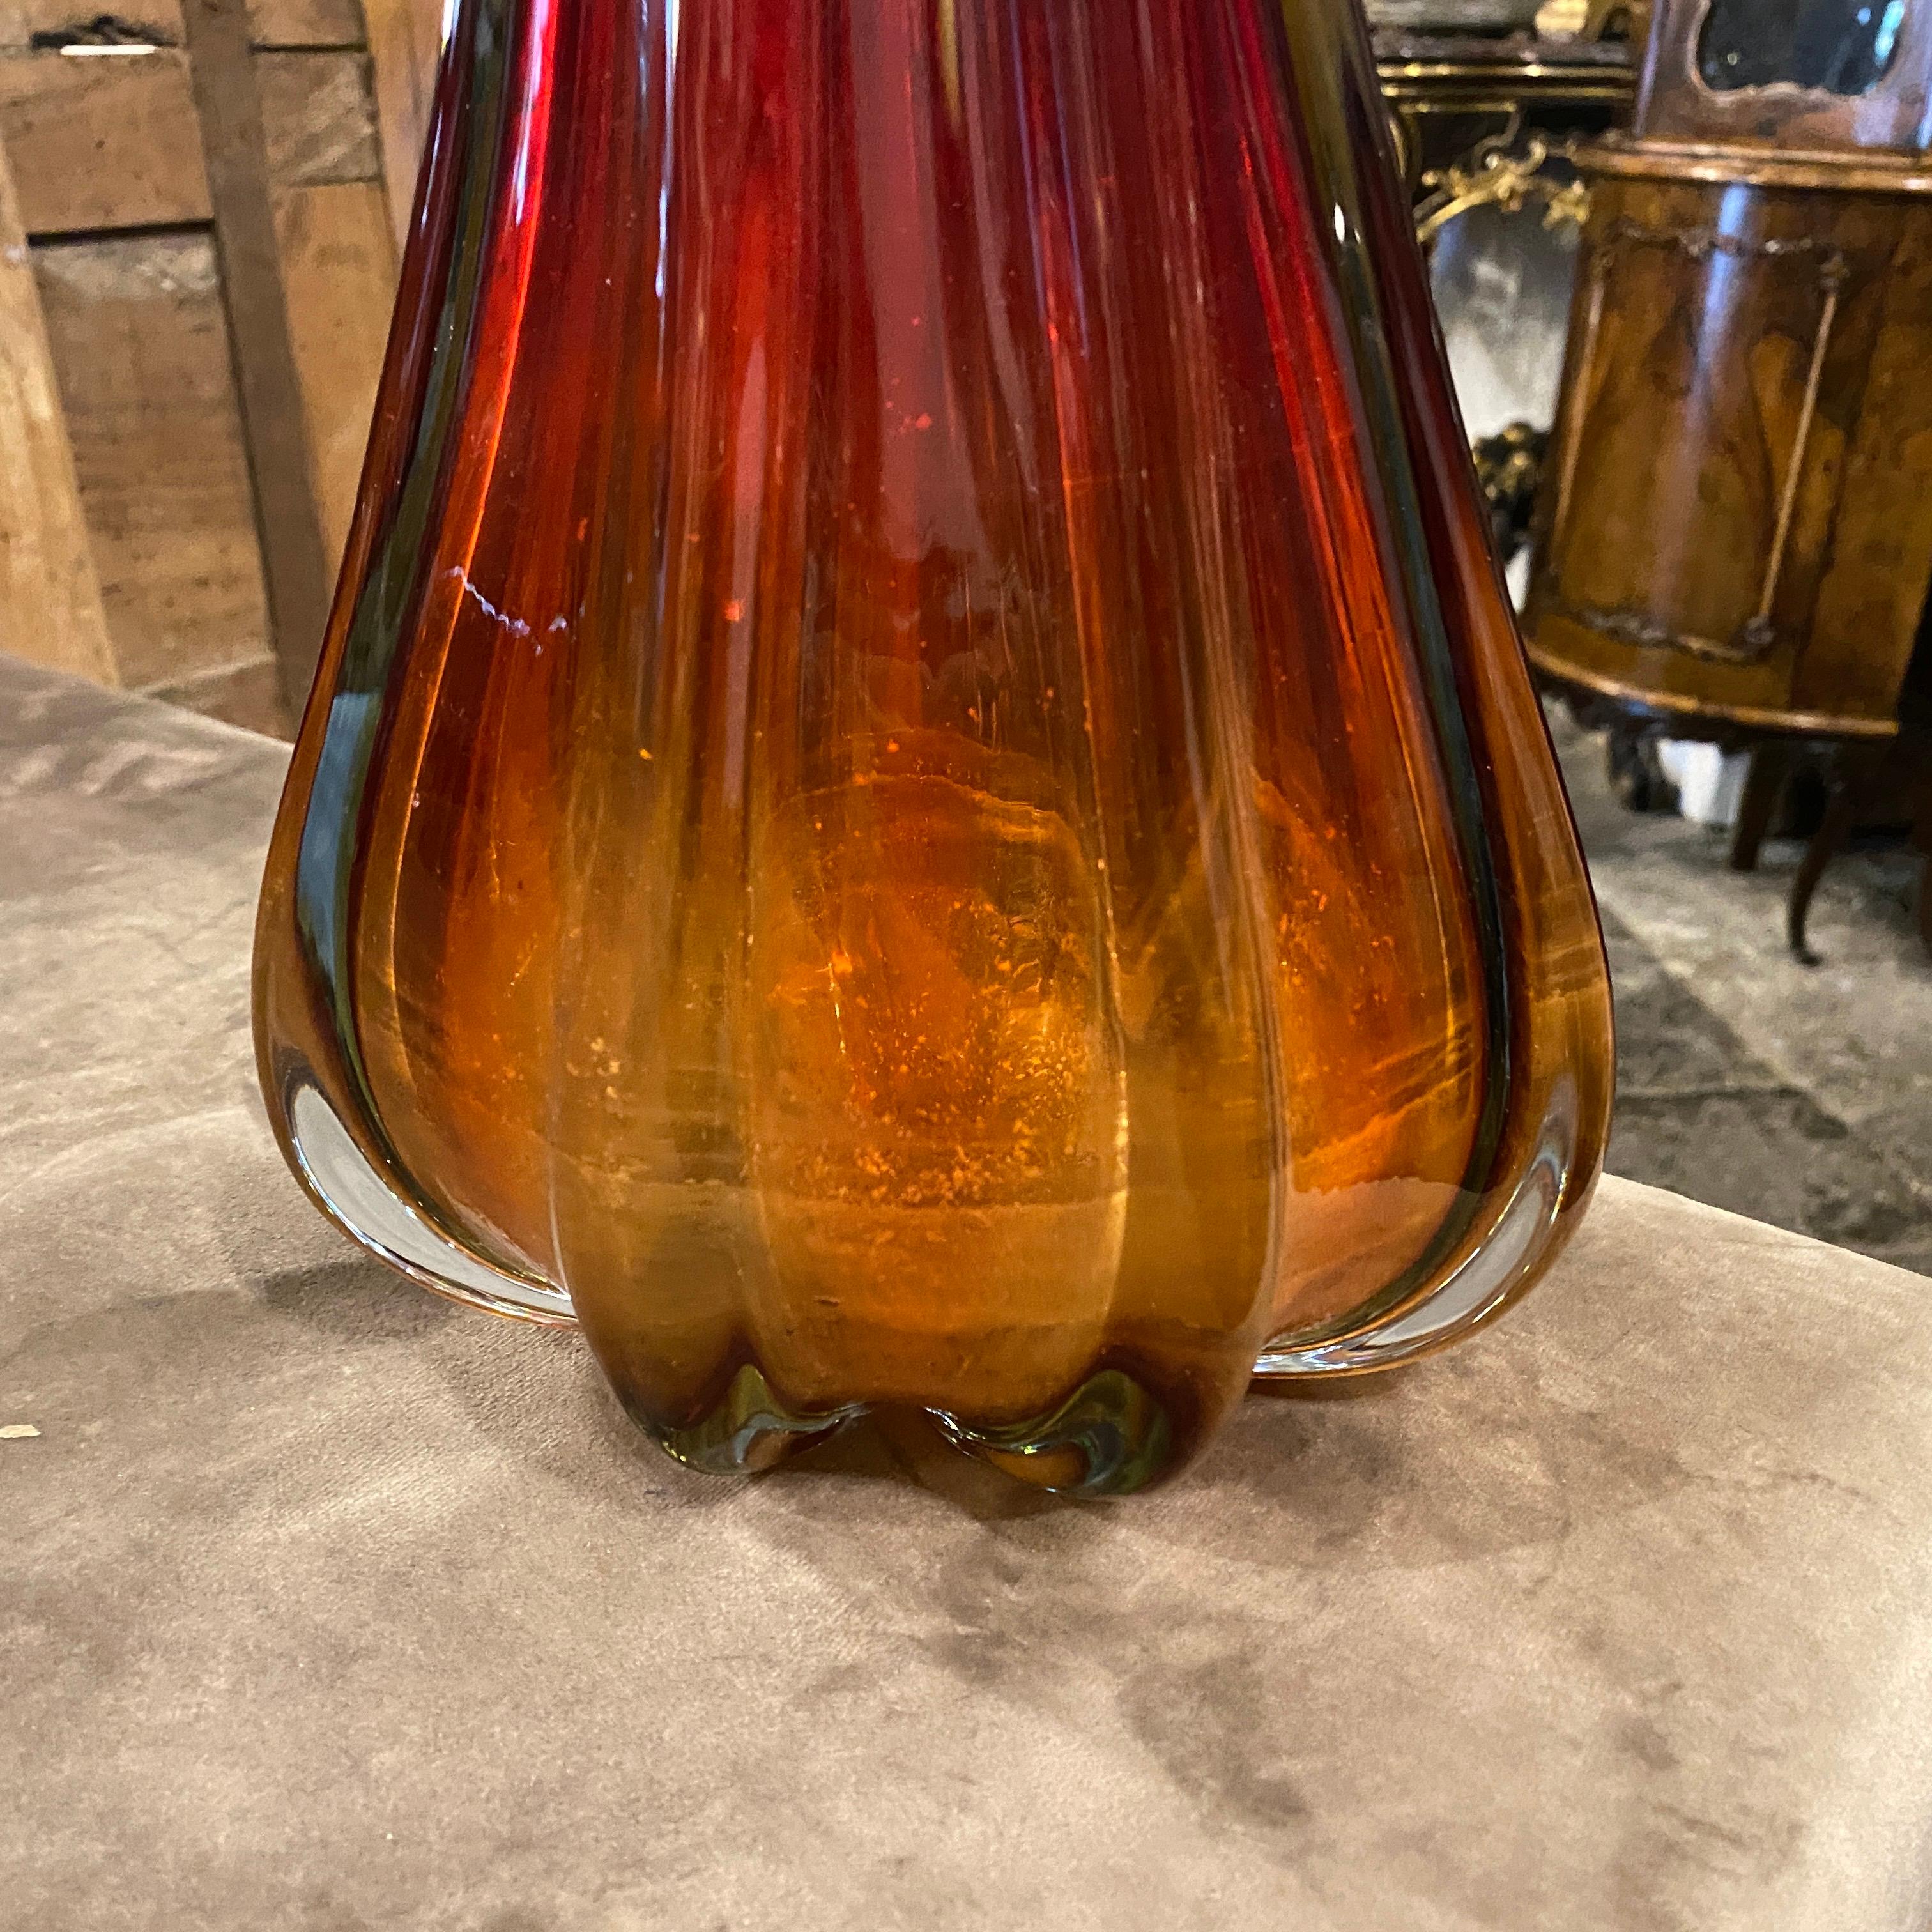 Eine ikonische Vase aus rotem und braunem Murano-Glas, entworfen von Flavio Poli für Seguso, in sehr gutem Zustand. Die Vase weist deutliche Merkmale auf, die sowohl die Designtrends dieser Zeit als auch die künstlerische Sensibilität von Flavio